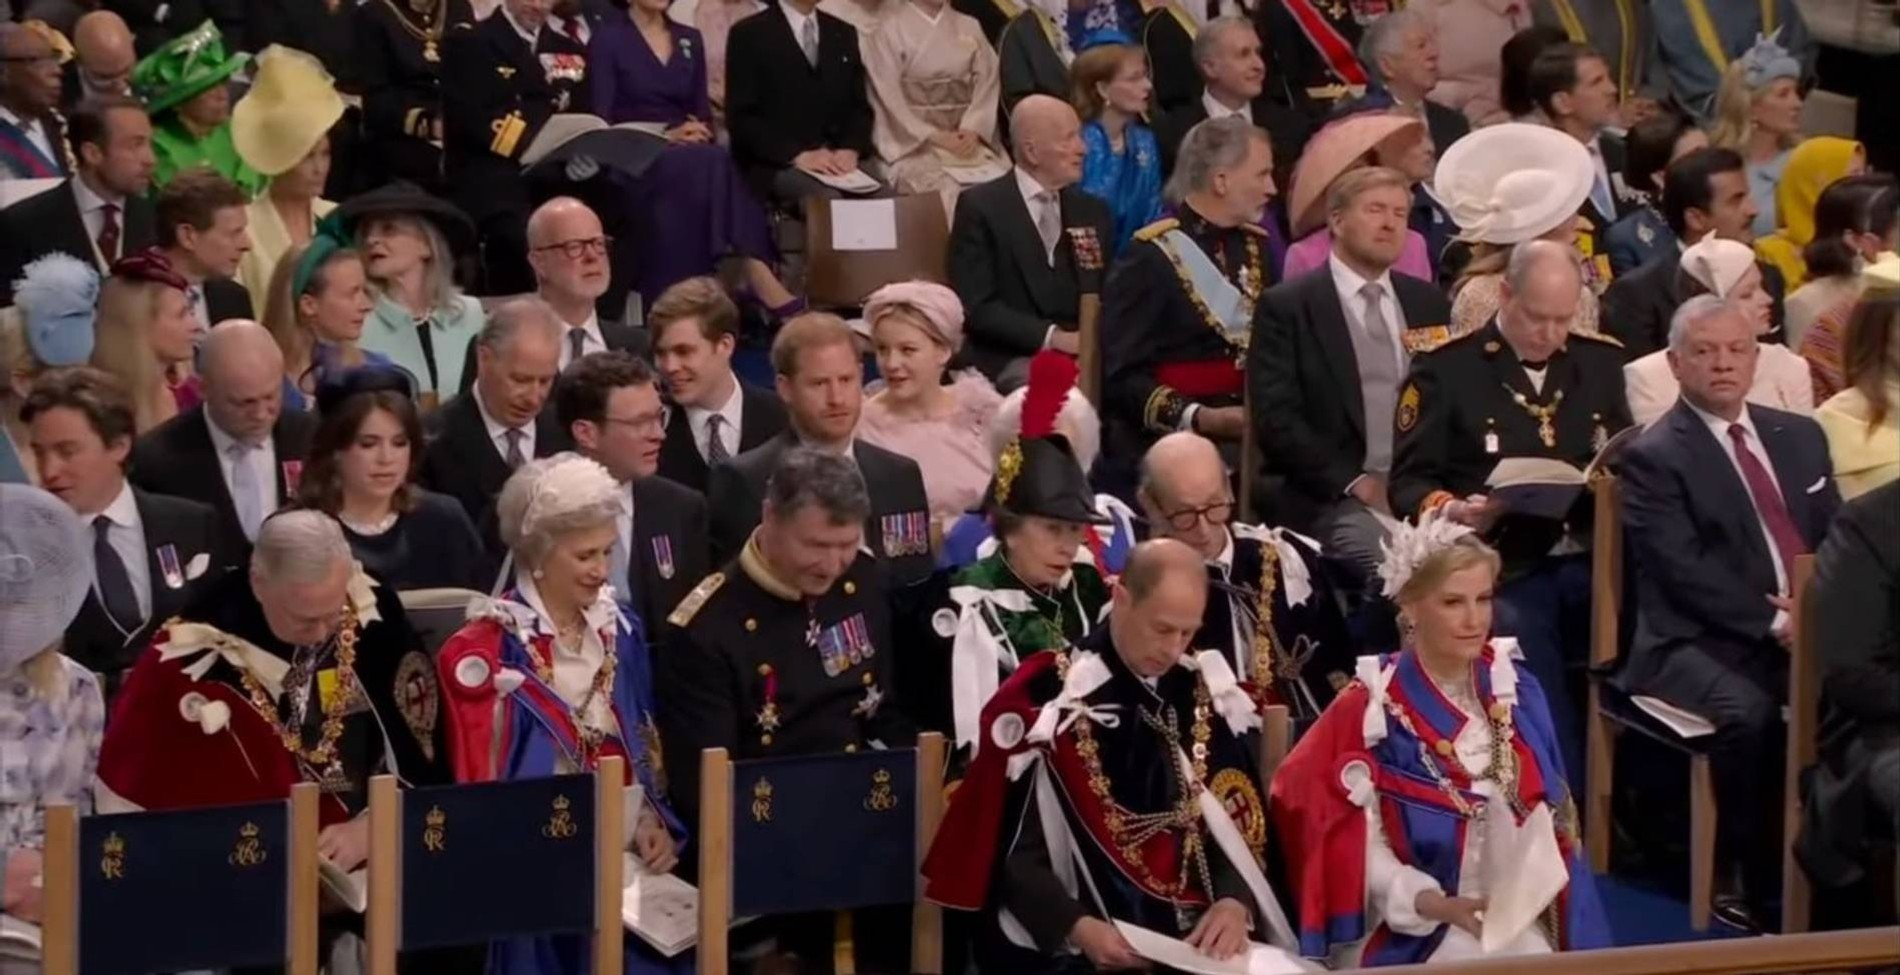 Мятежный принц занял почетное место в третьем ряду
Фото: BBC